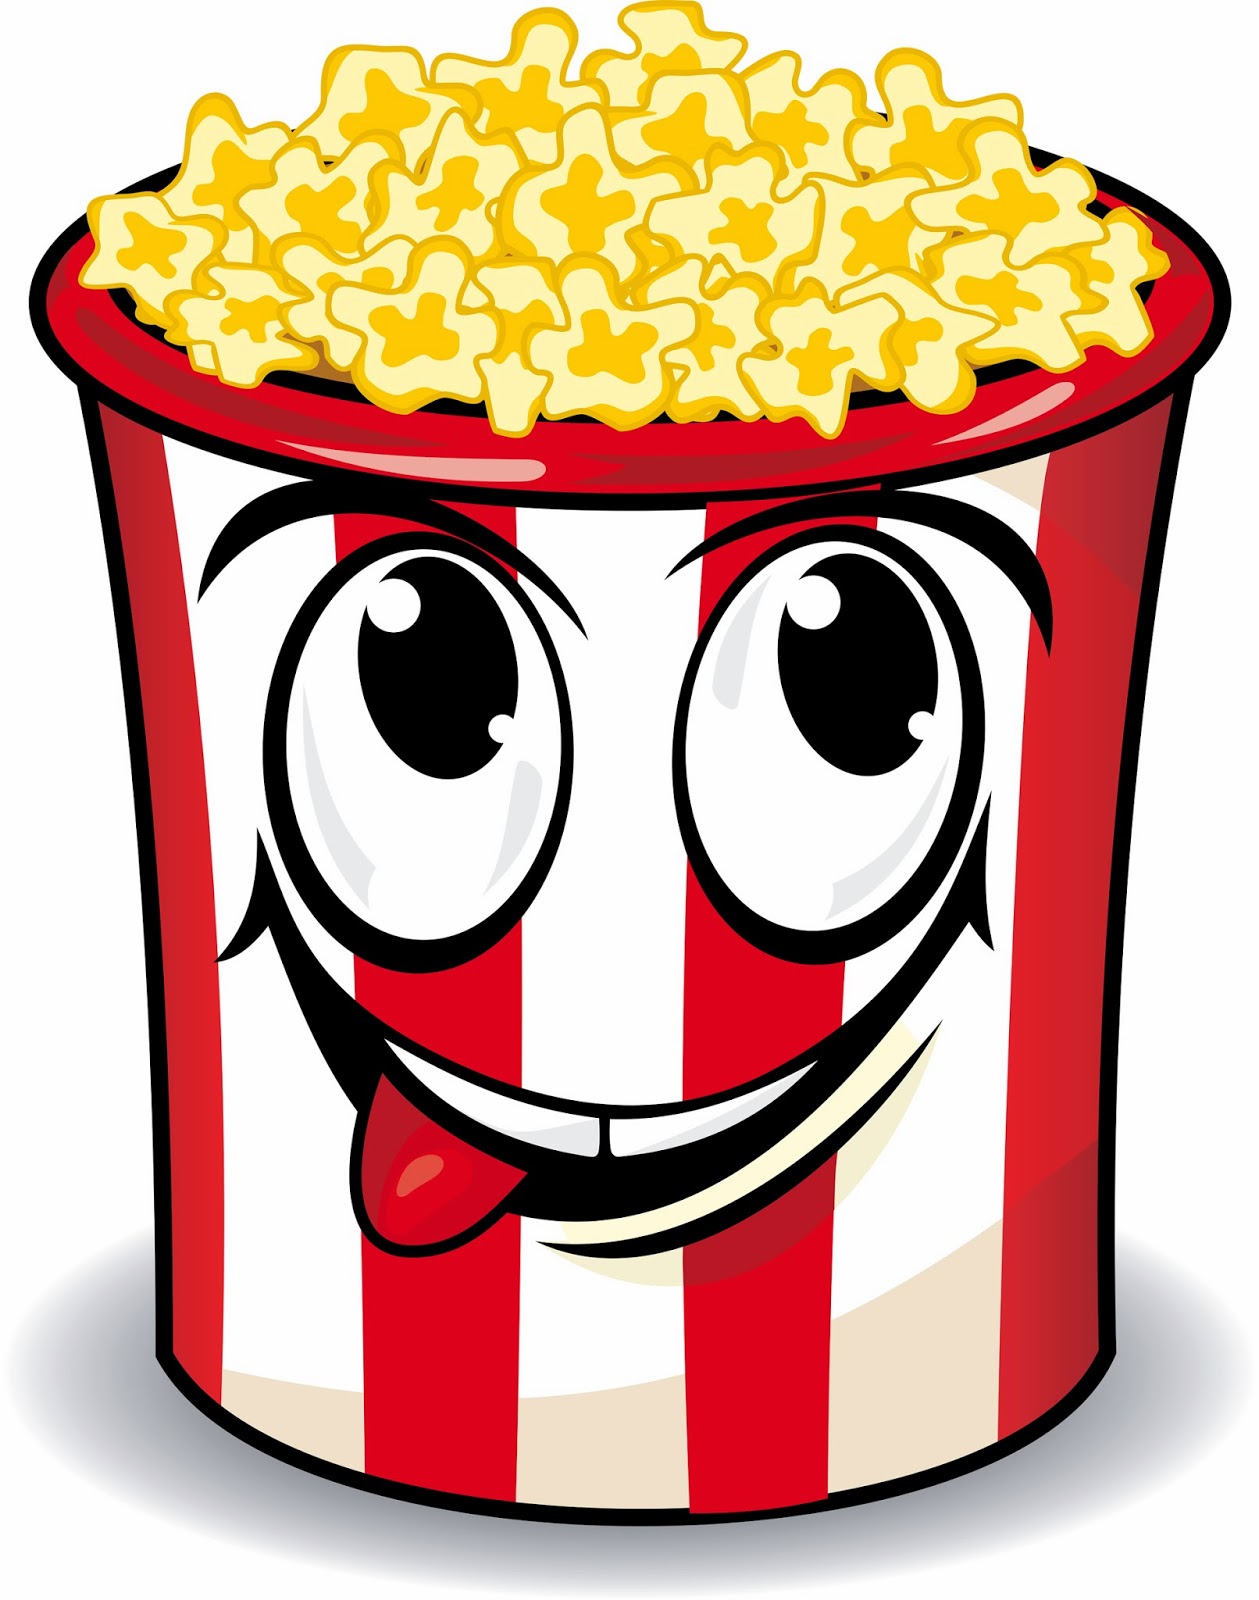 Popcorn clipart free clip art - Popcorn Clip Art Free